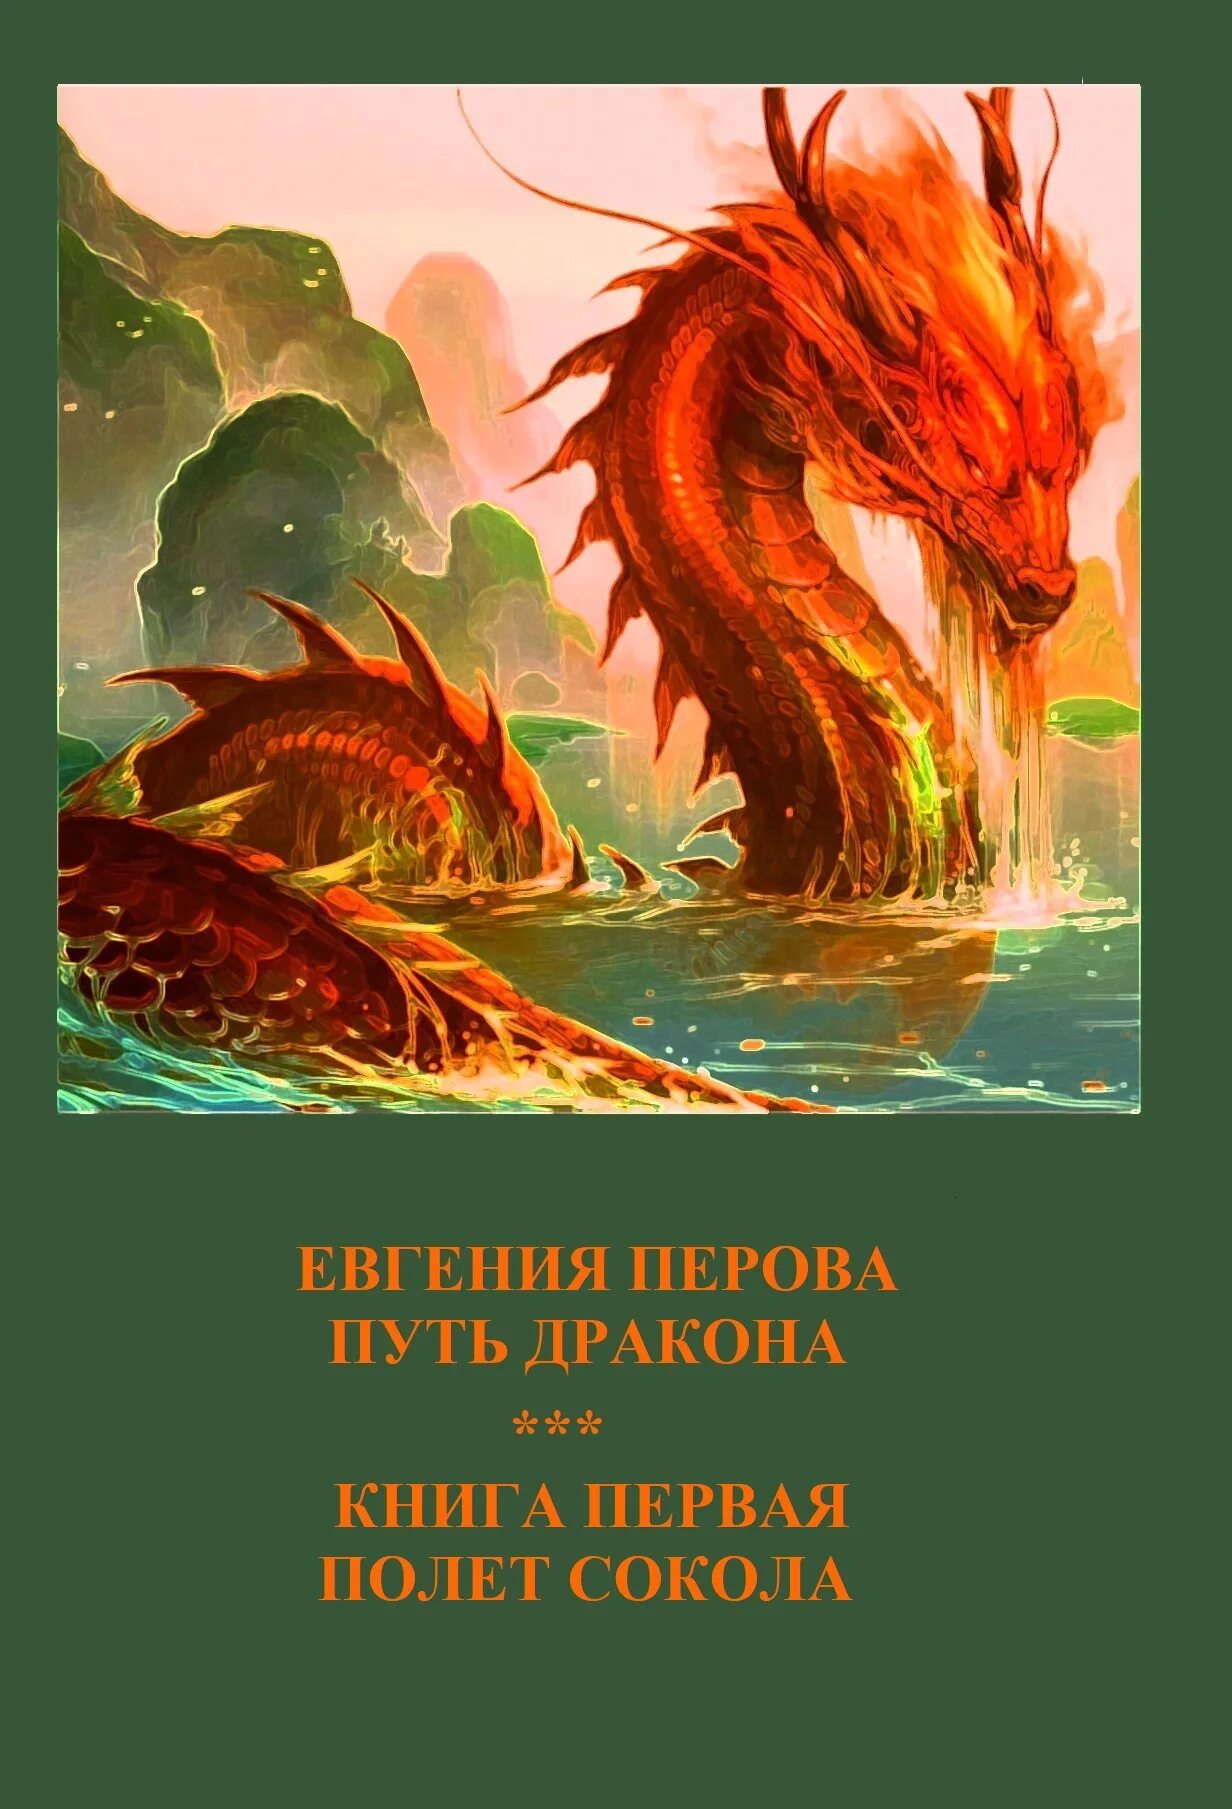 Читать книгу про драконов и любовь. Книга дракона. Современные книги о драконах. Пути дракона романы. Путь дракона.